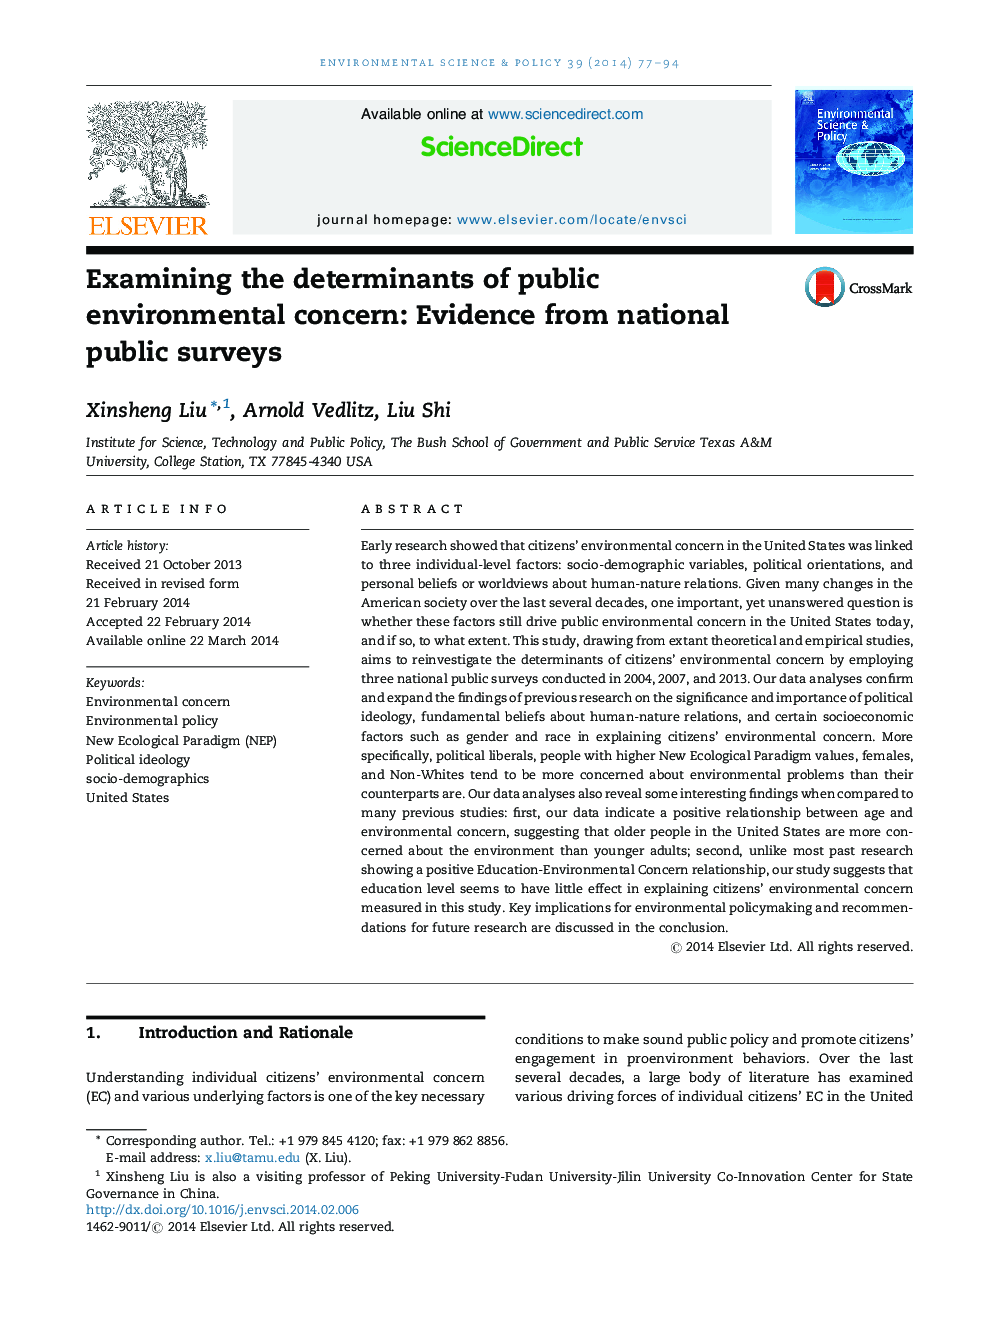 بررسی عوامل تعیین کننده نگرانی زیست محیطی عمومی: شواهد از نظرسنجی عمومی ملی 